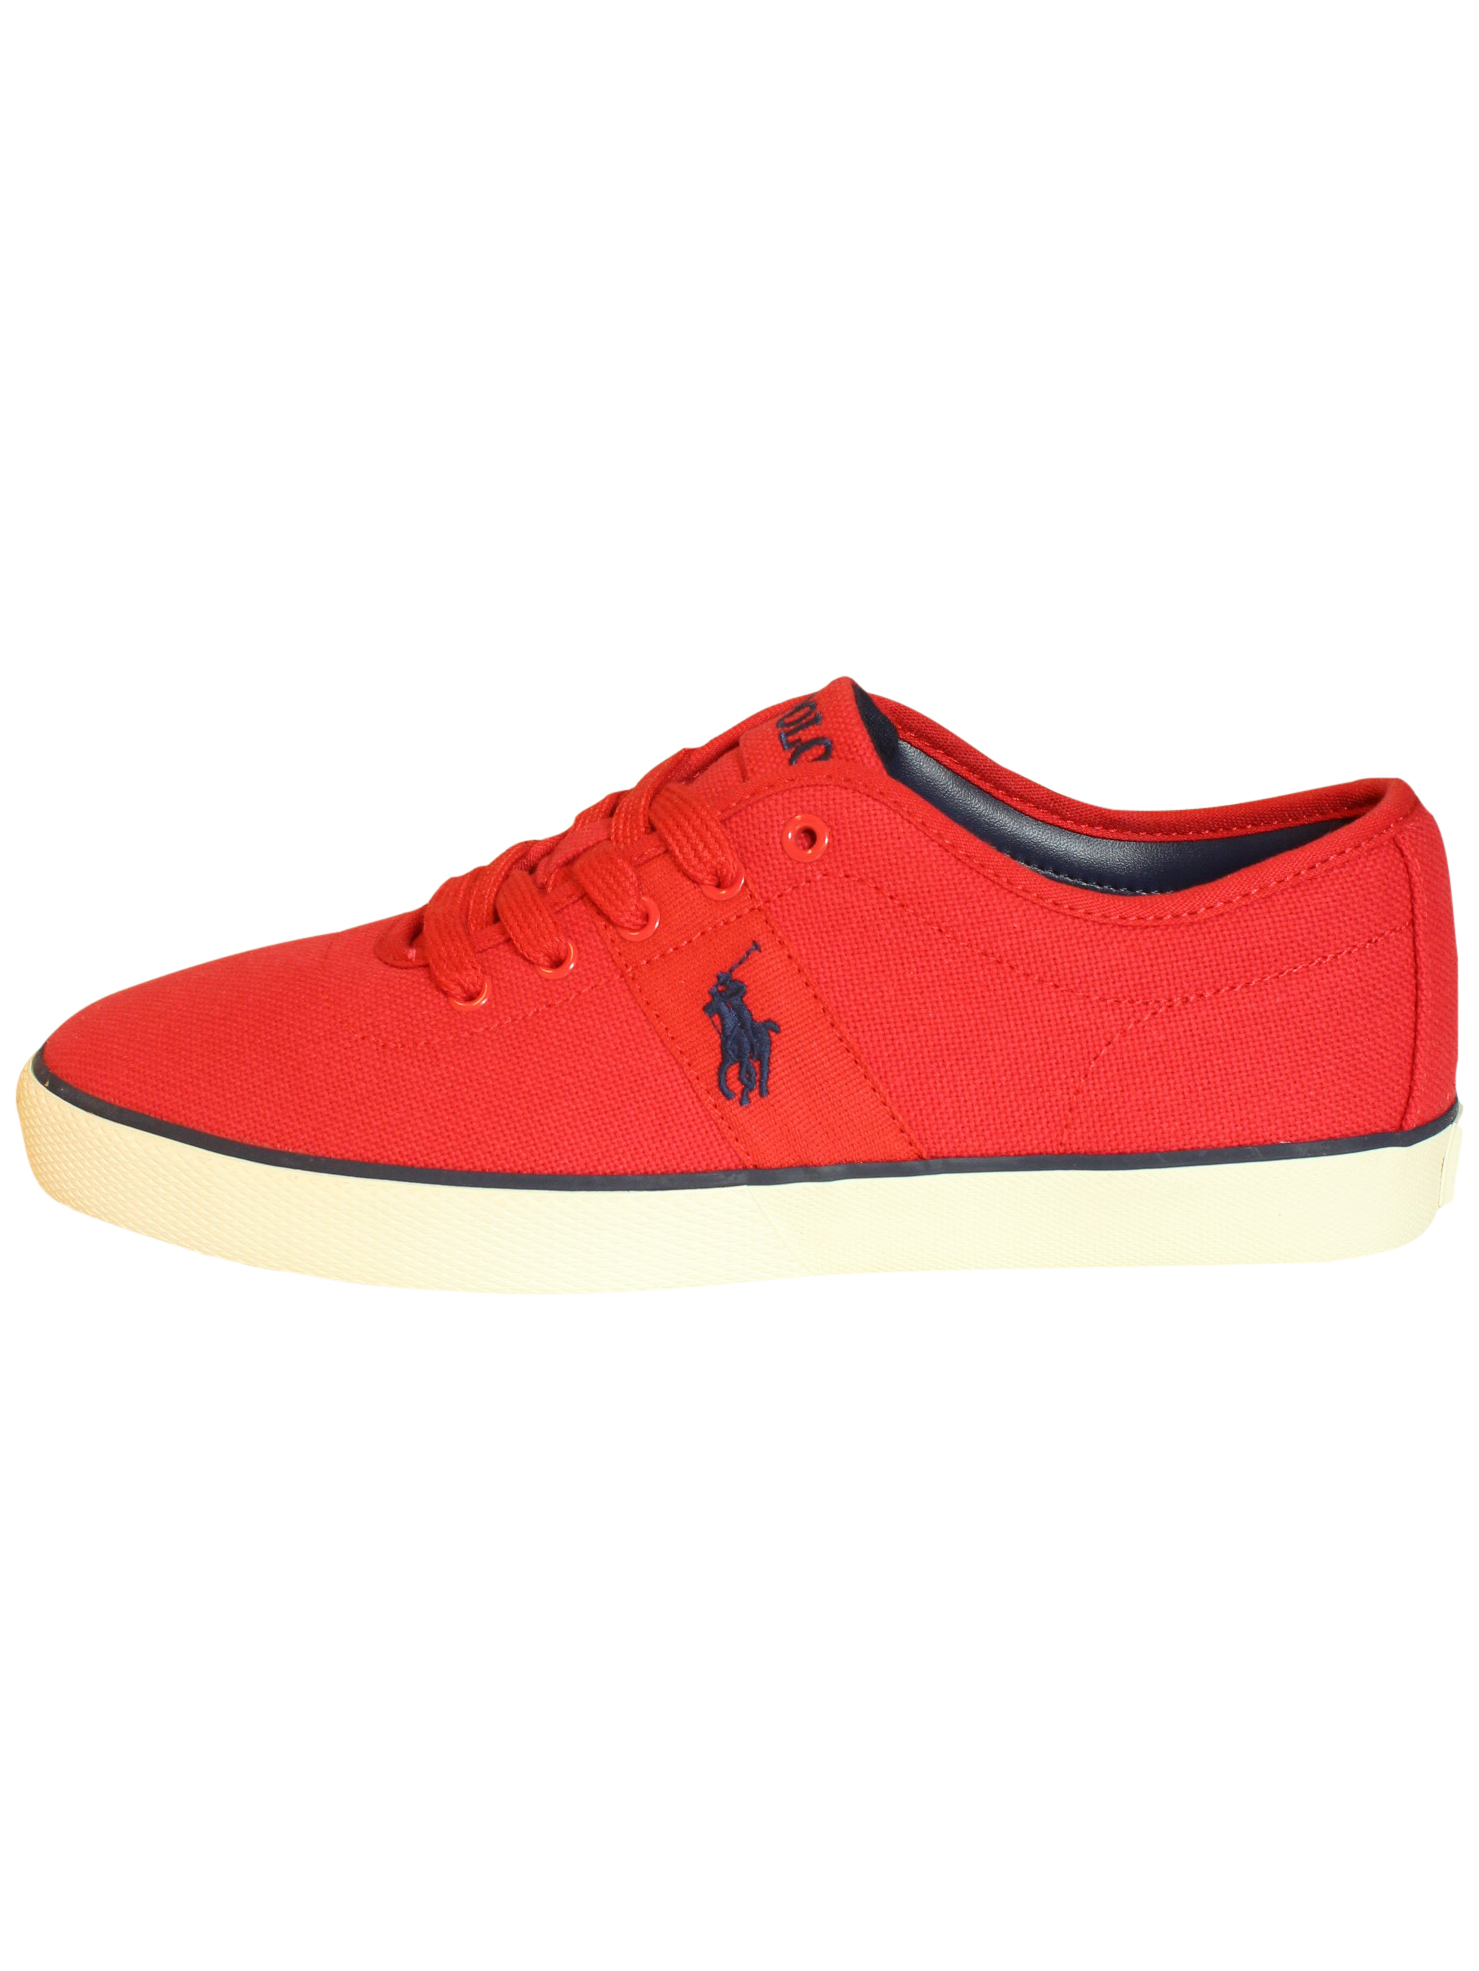 Buy Ralph Lauren Shoes Red